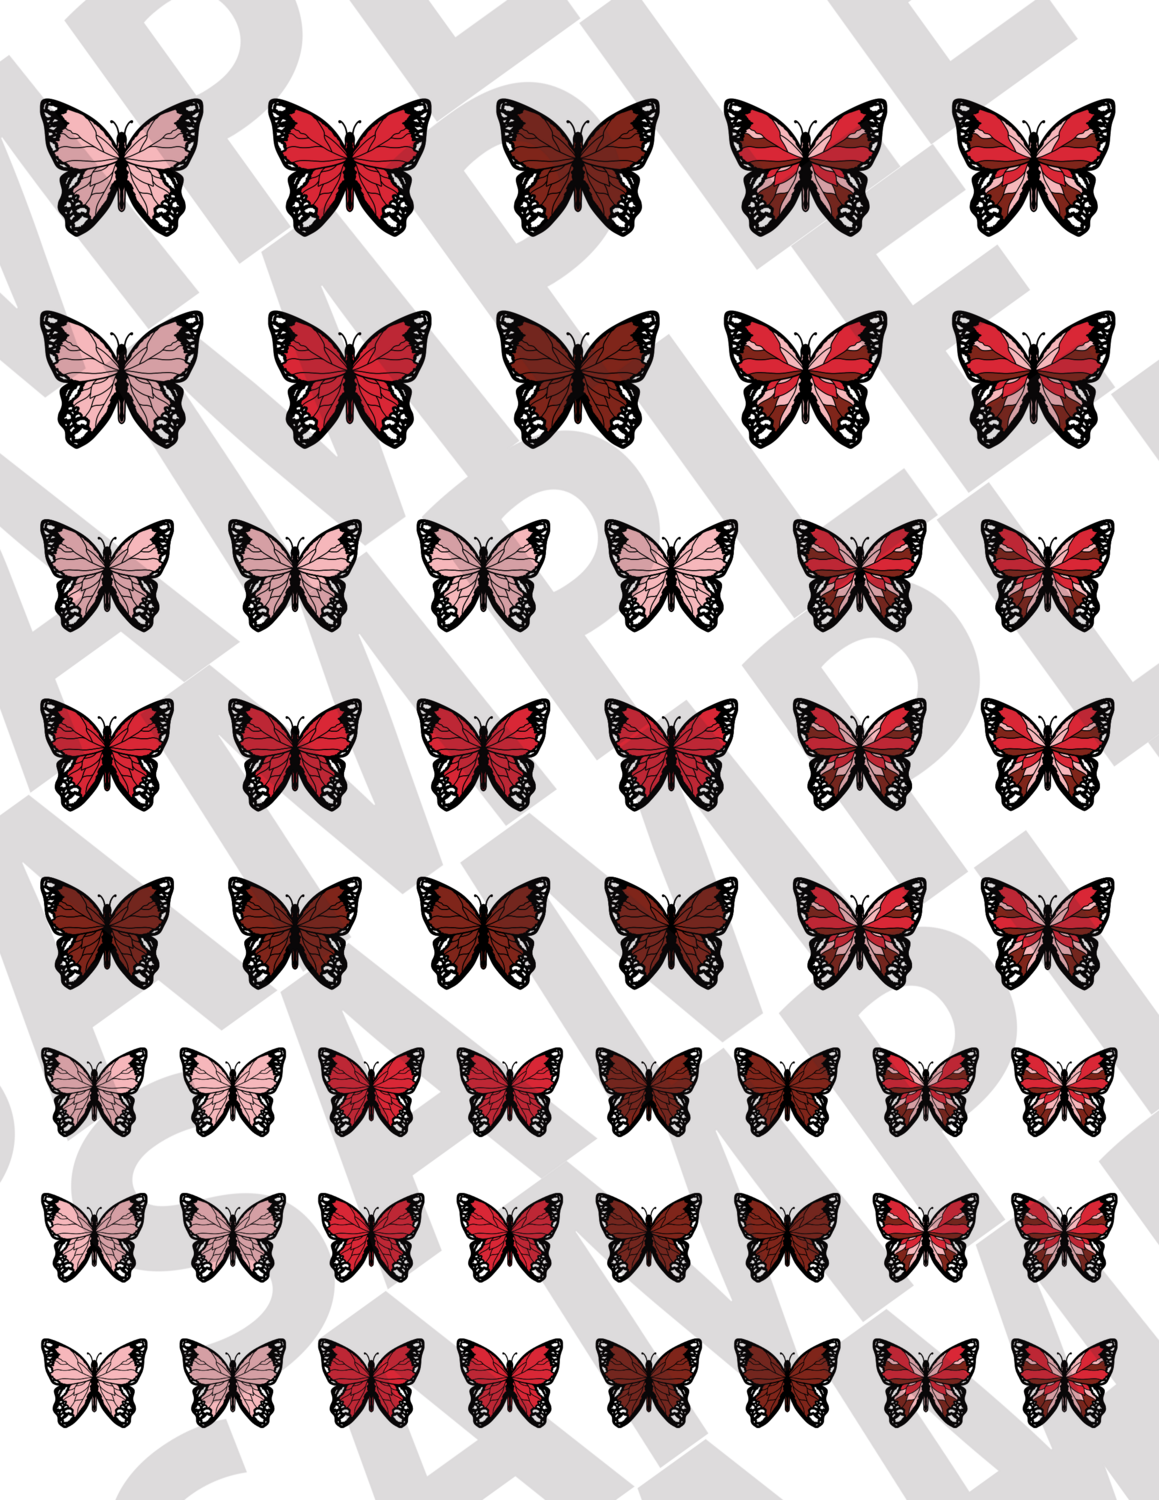 Red - Smaller Butterflies